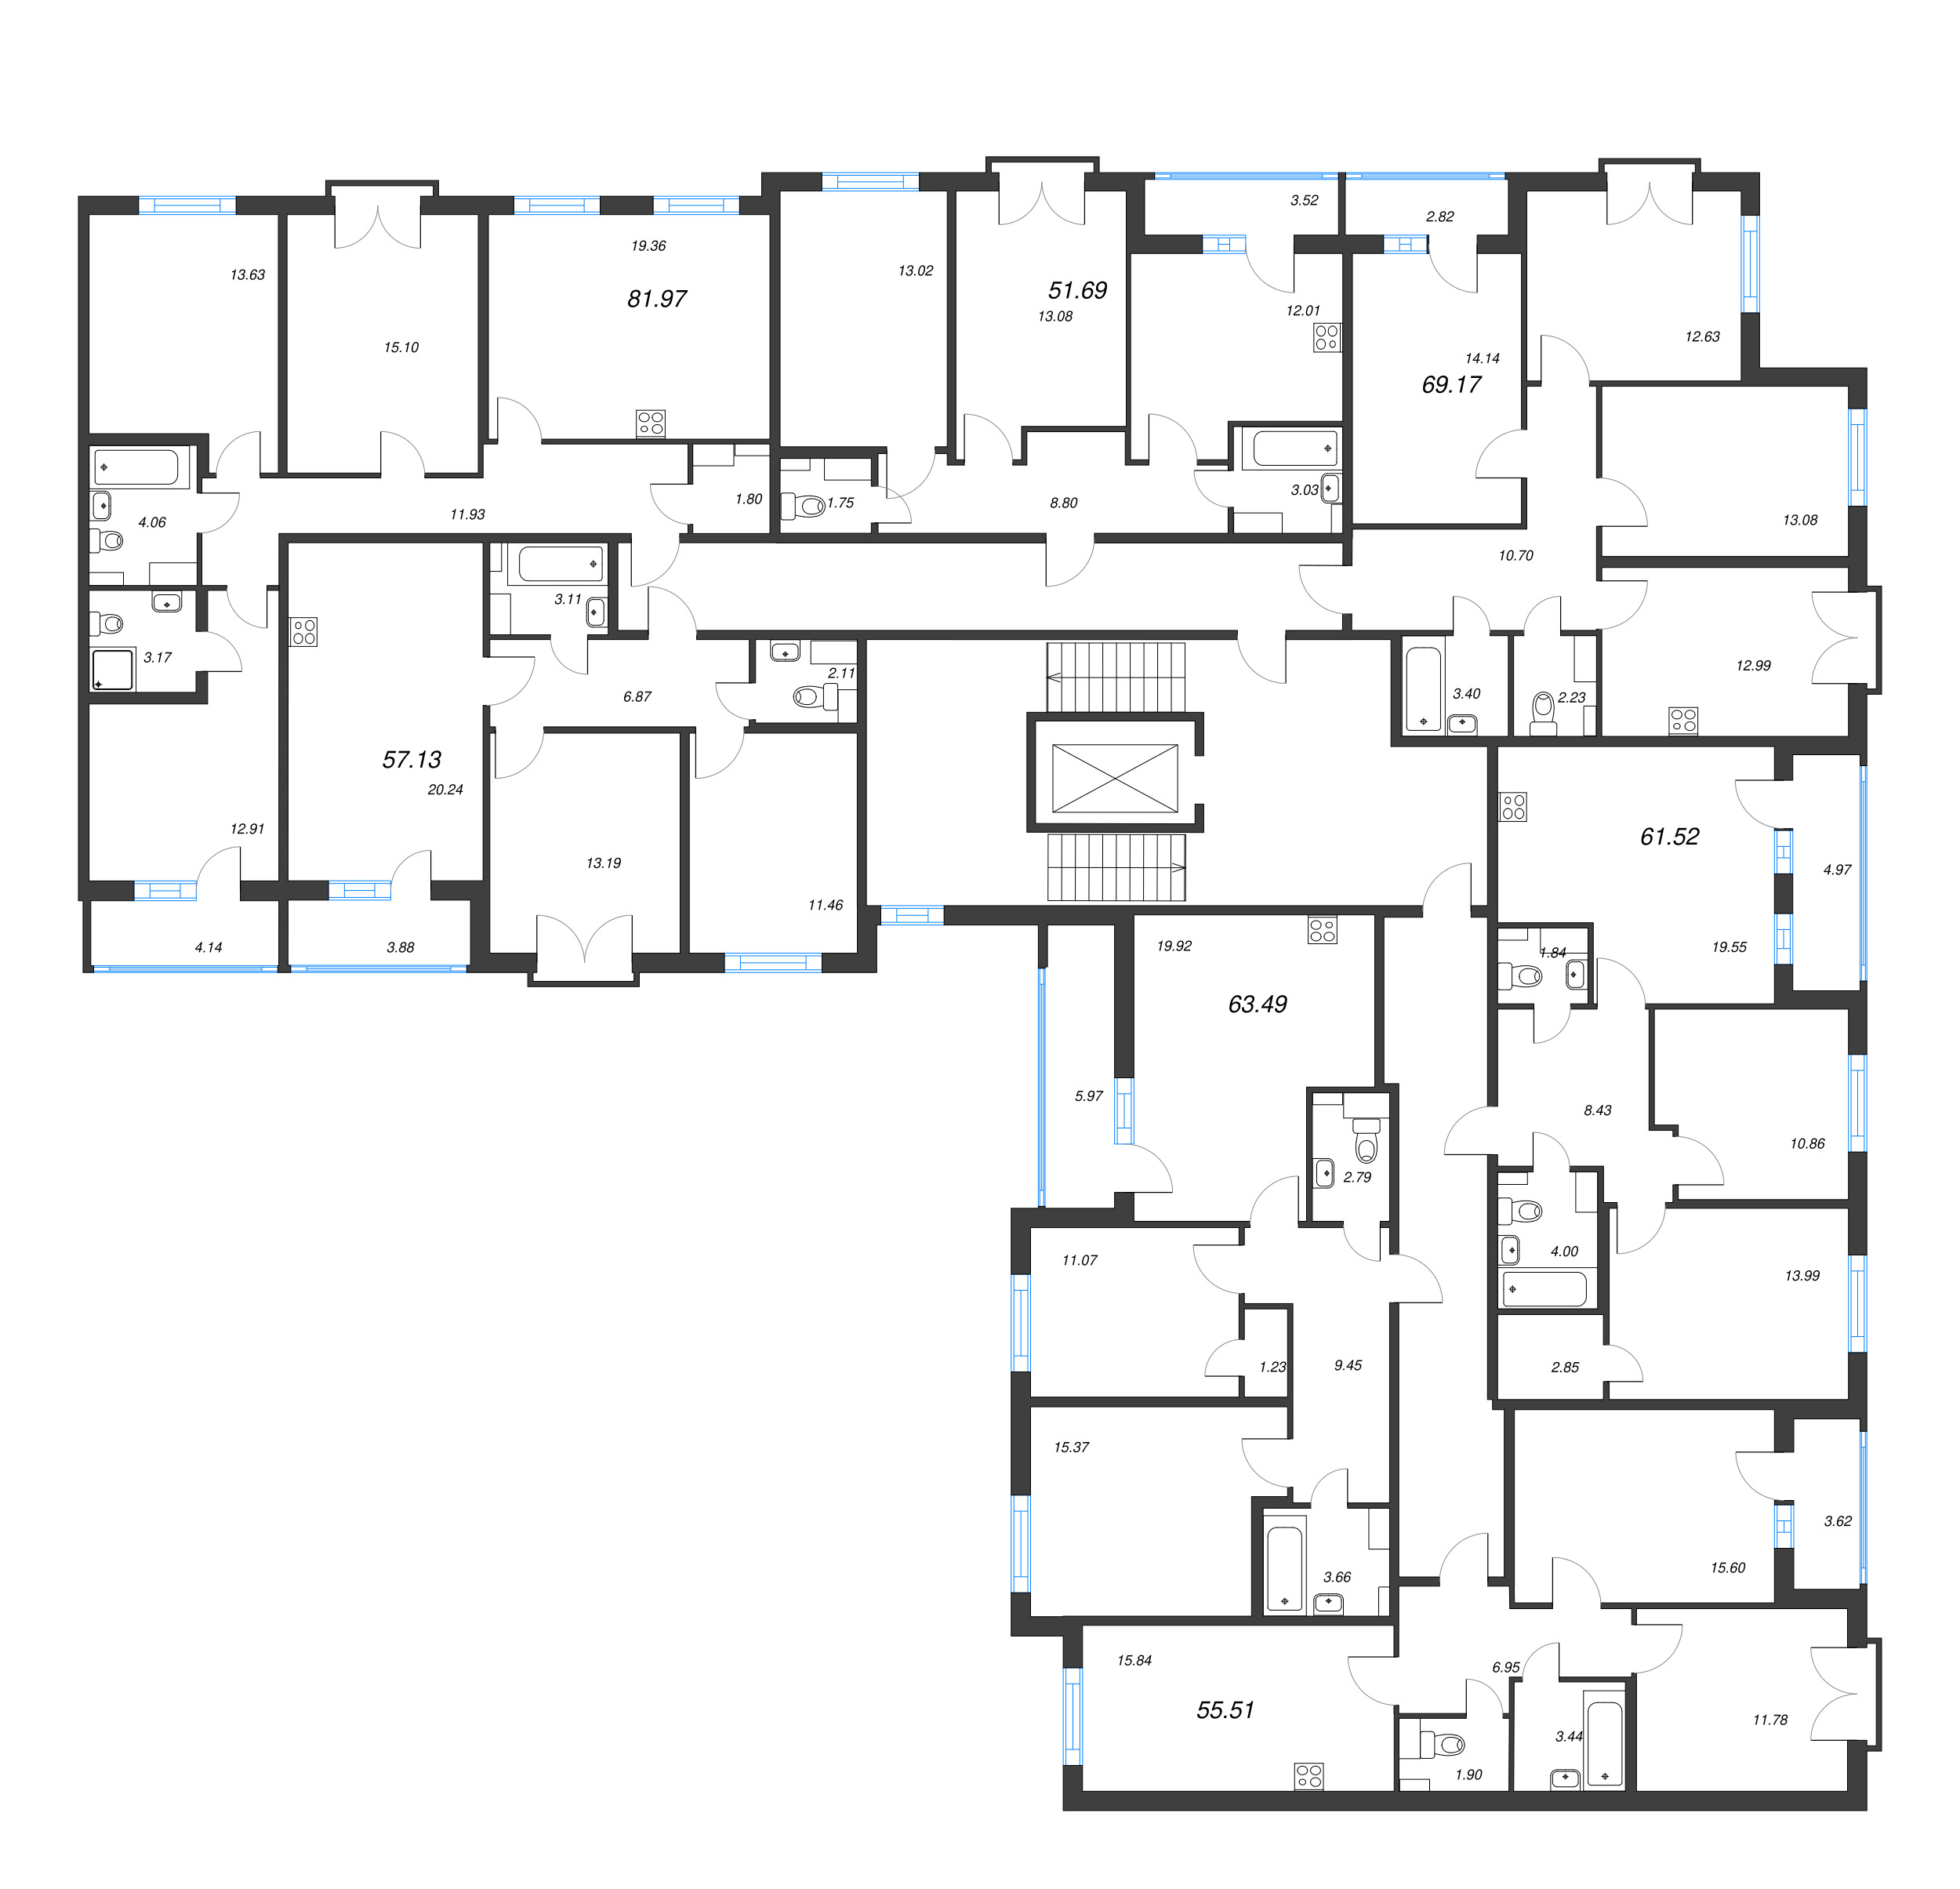 2-комнатная квартира, 51.69 м² - планировка этажа